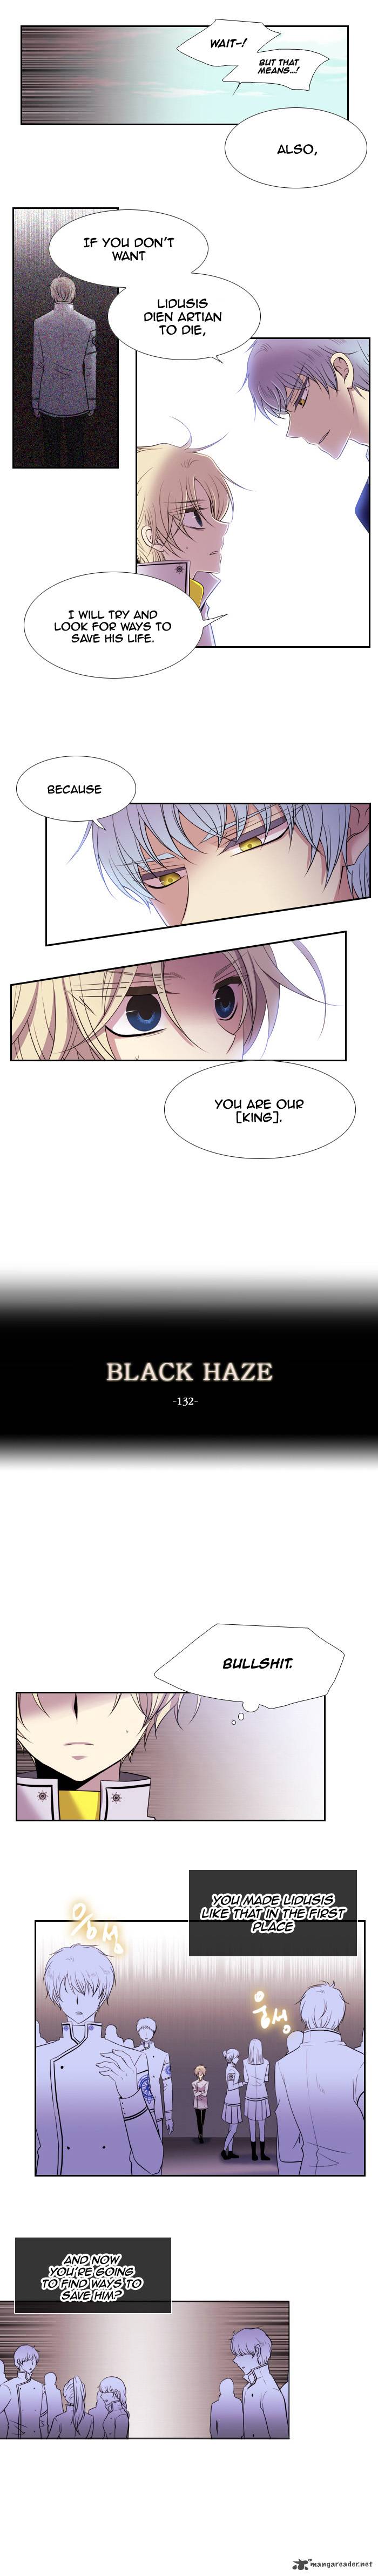 Black Haze 132